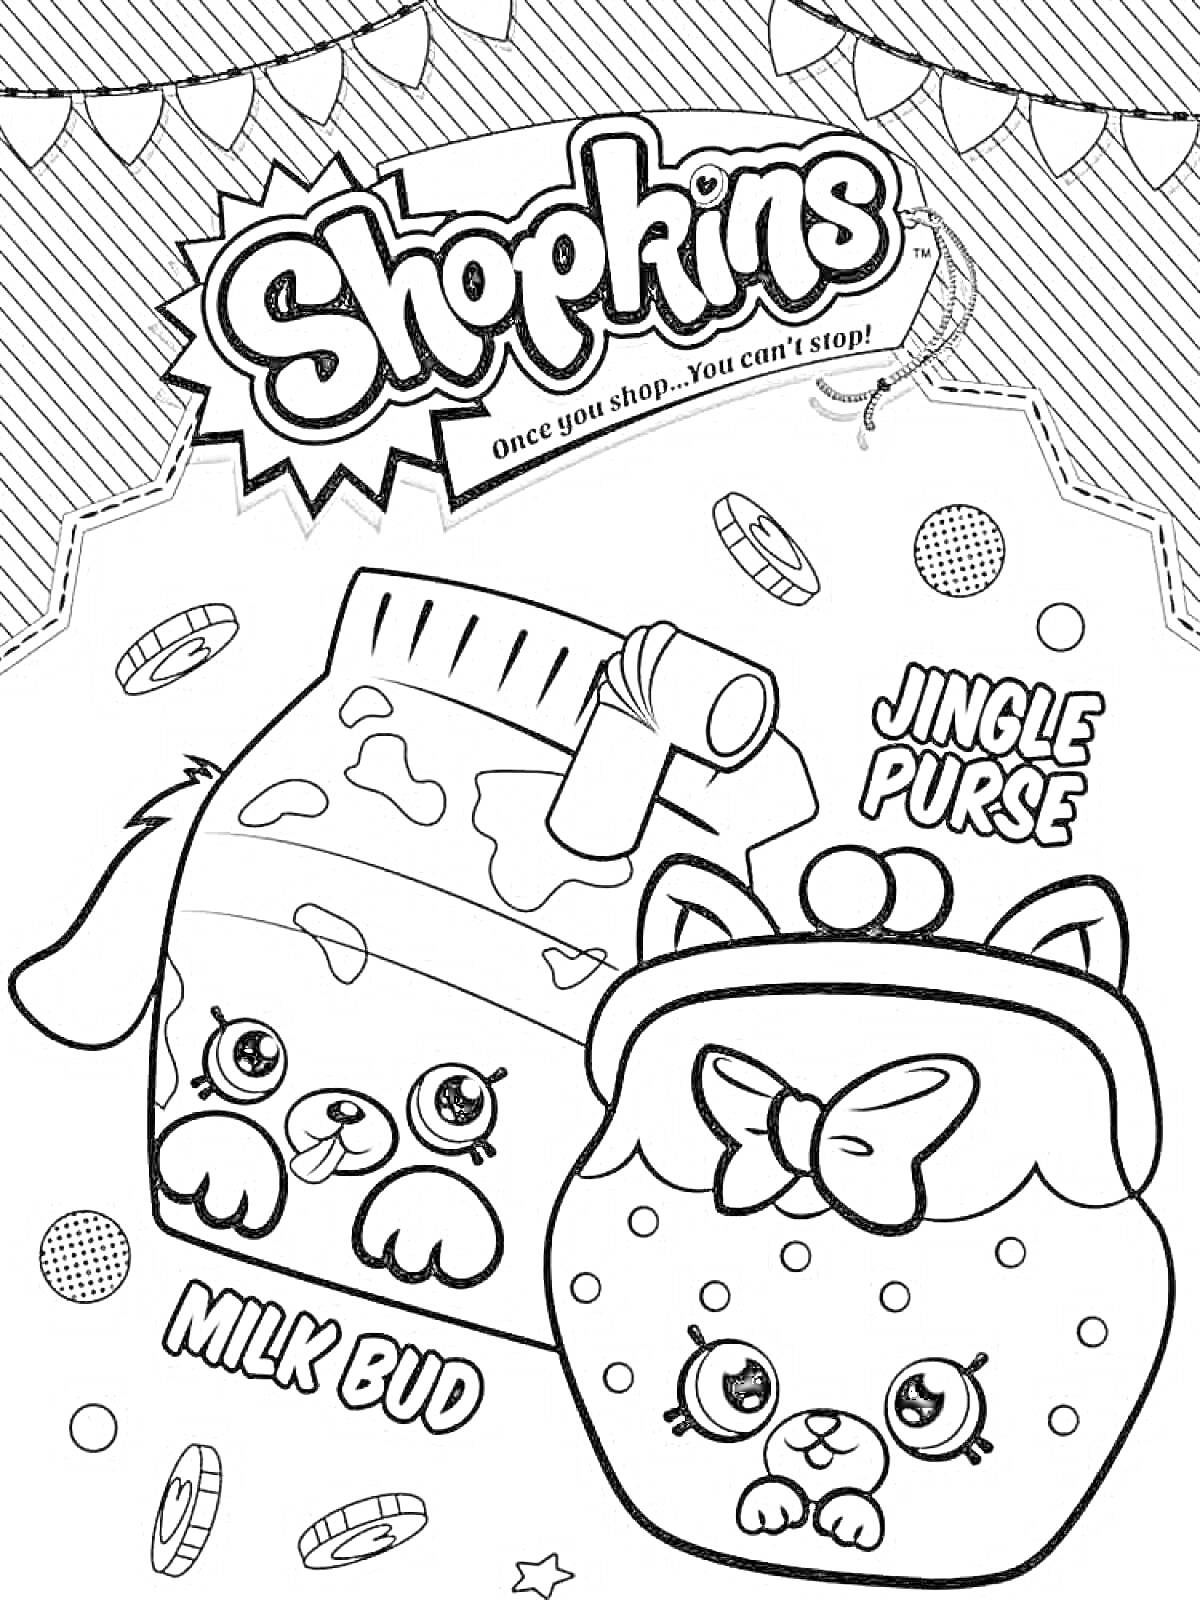 Раскраска Shopkins Milk Bud и Jingle Purse с конфетами и звездочками